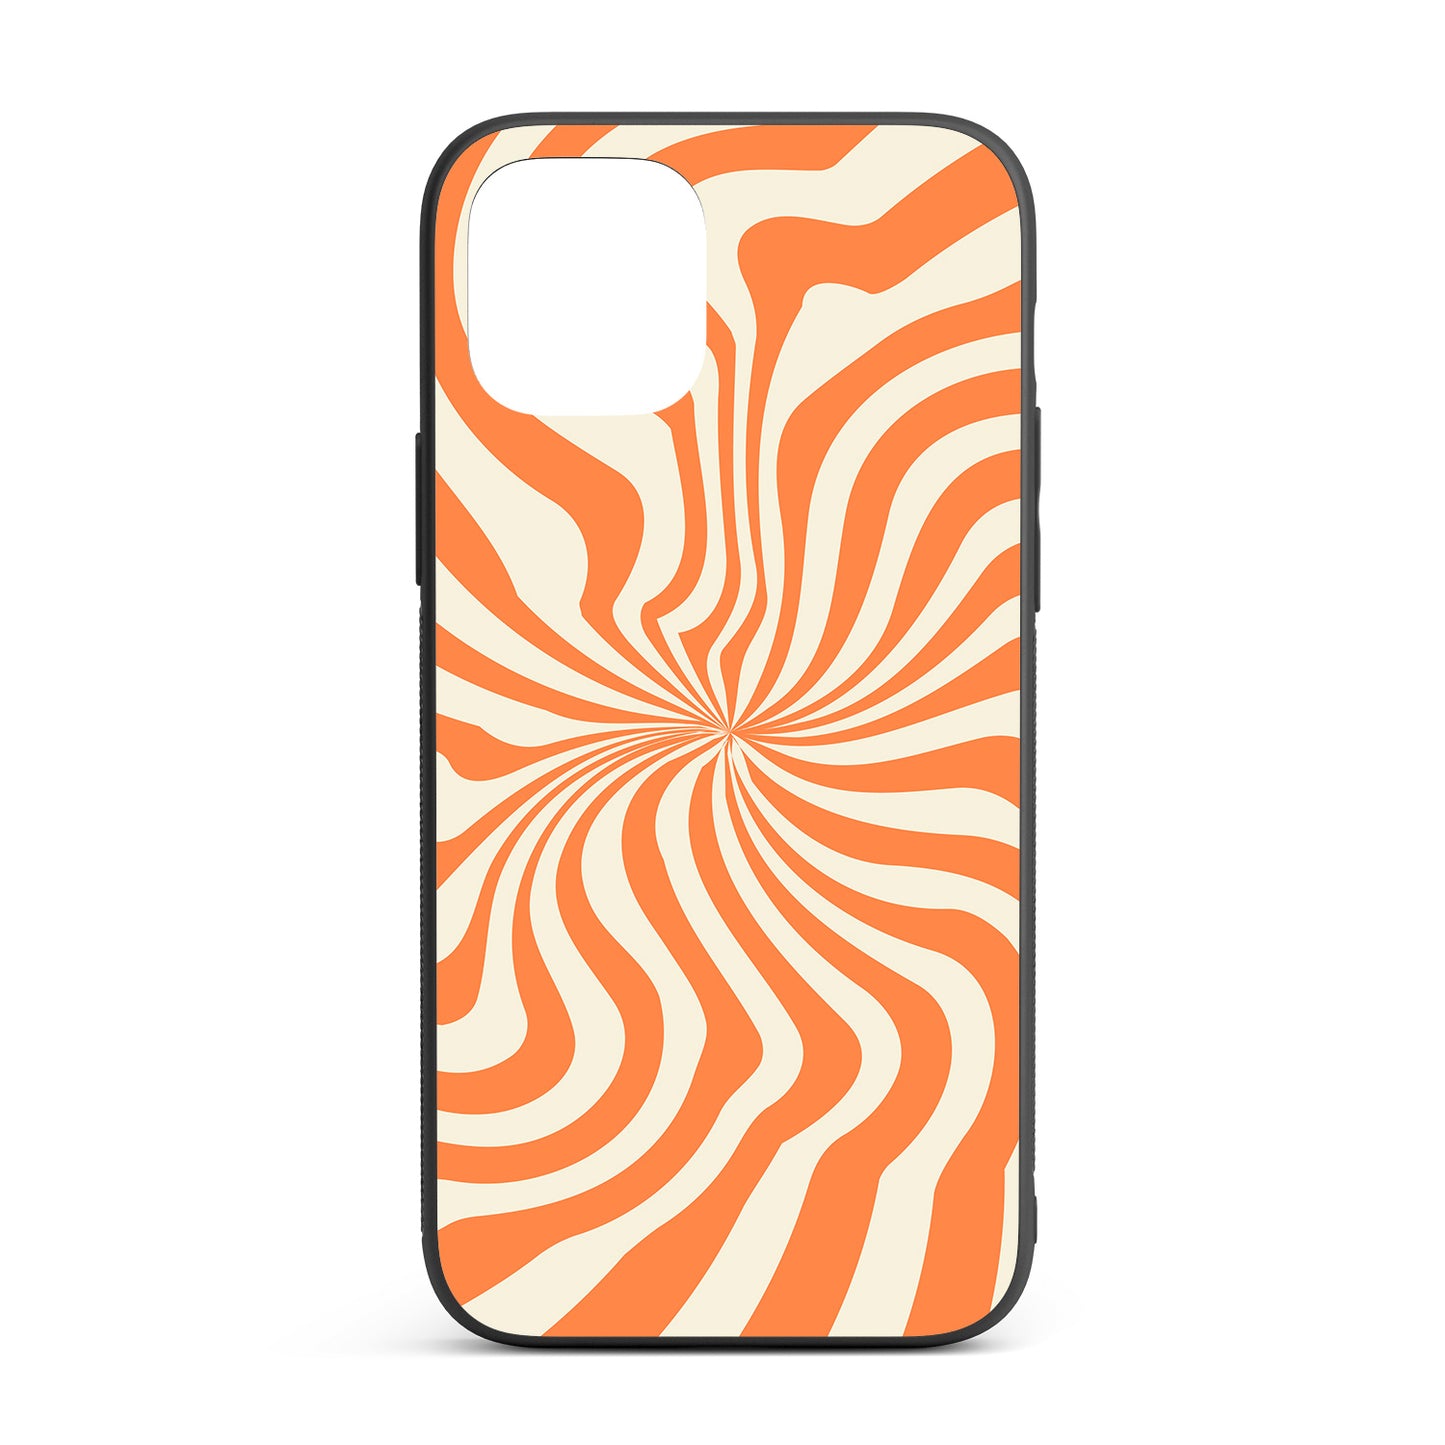 Orange Dizzy Spiral iPhone glass case